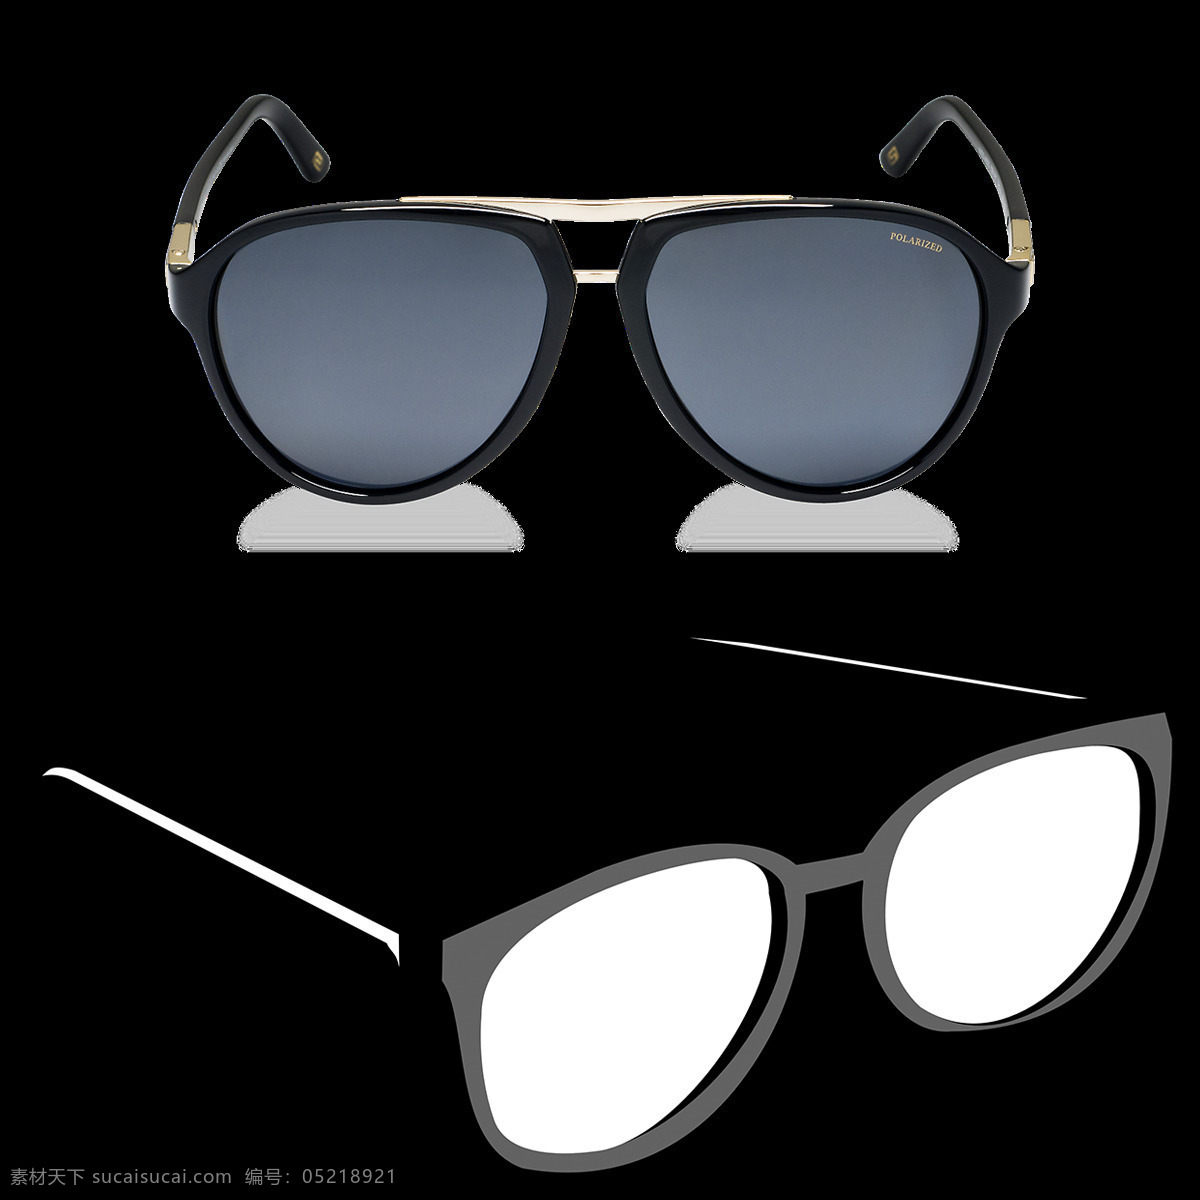 两 副 眼镜 免 抠 透明 图 层 卡通眼镜图片 创意眼镜图片 眼镜图片大全 唯美 时尚 眼镜广告图片 墨镜图片 太阳镜图片 近视眼镜 眼镜海报 卡通眼镜 黑框眼镜